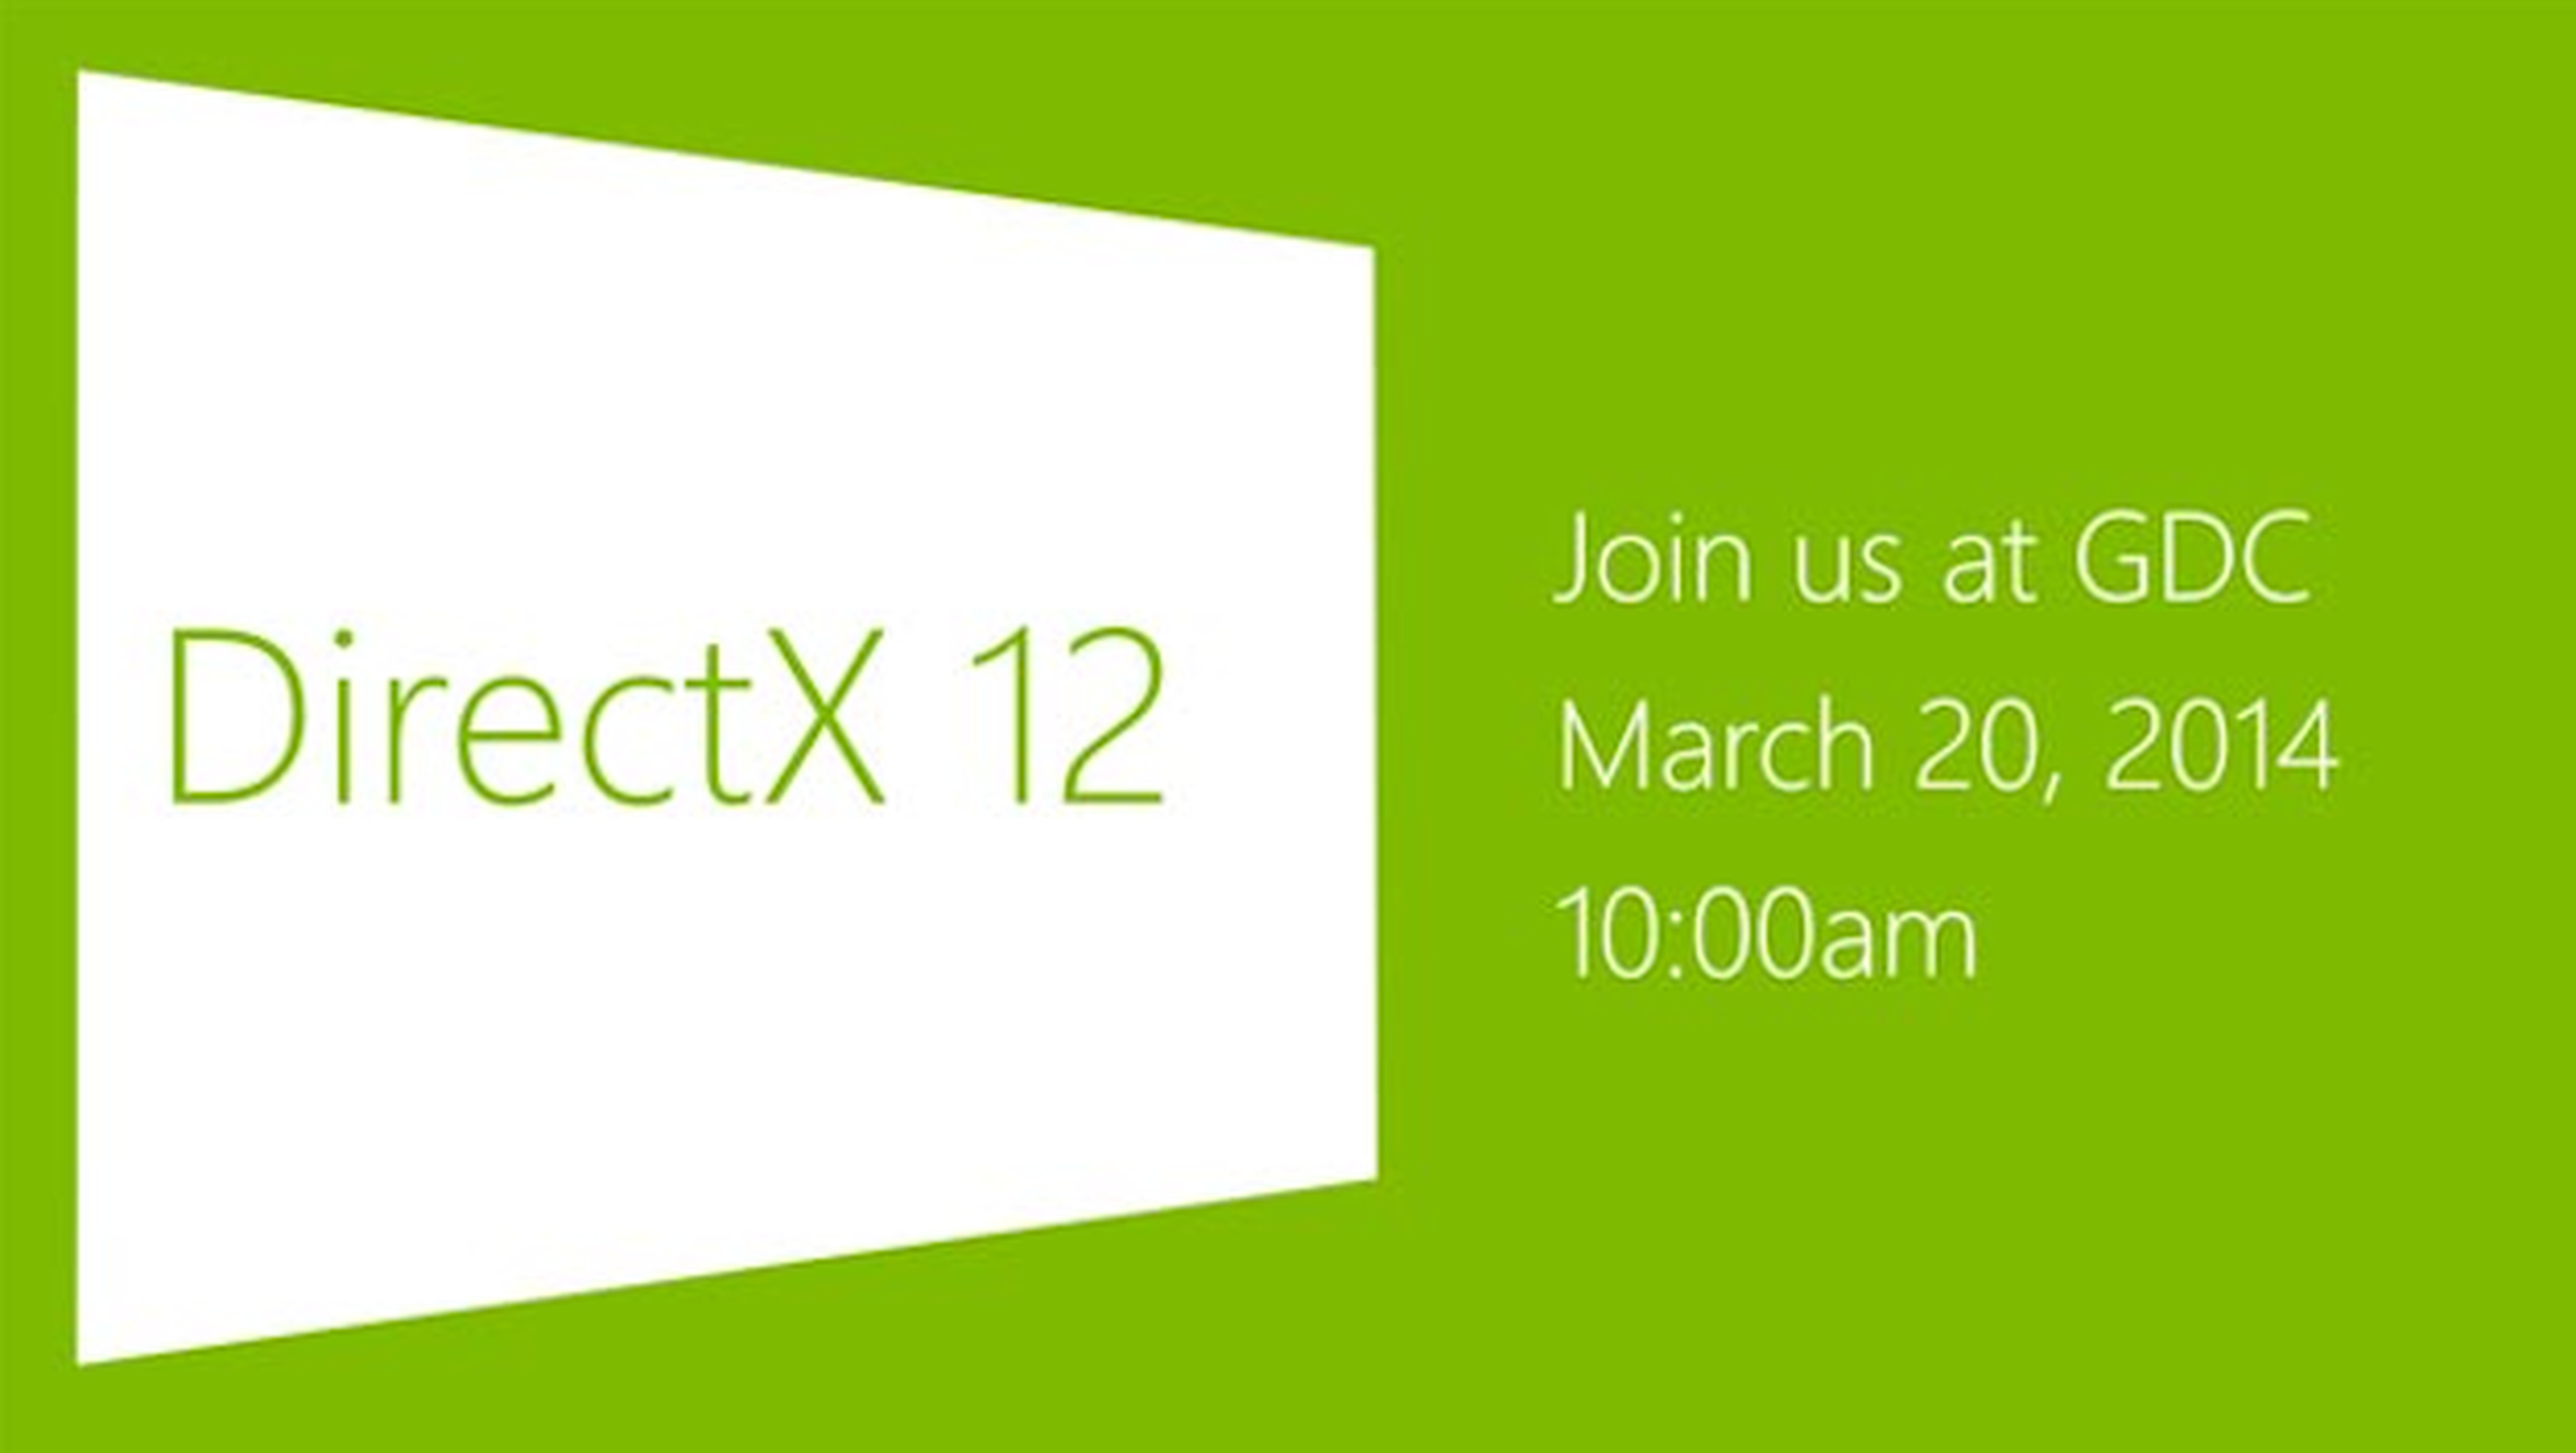 El nuevo DirectX 12 verá la luz el 20 de Marzo en la GDC